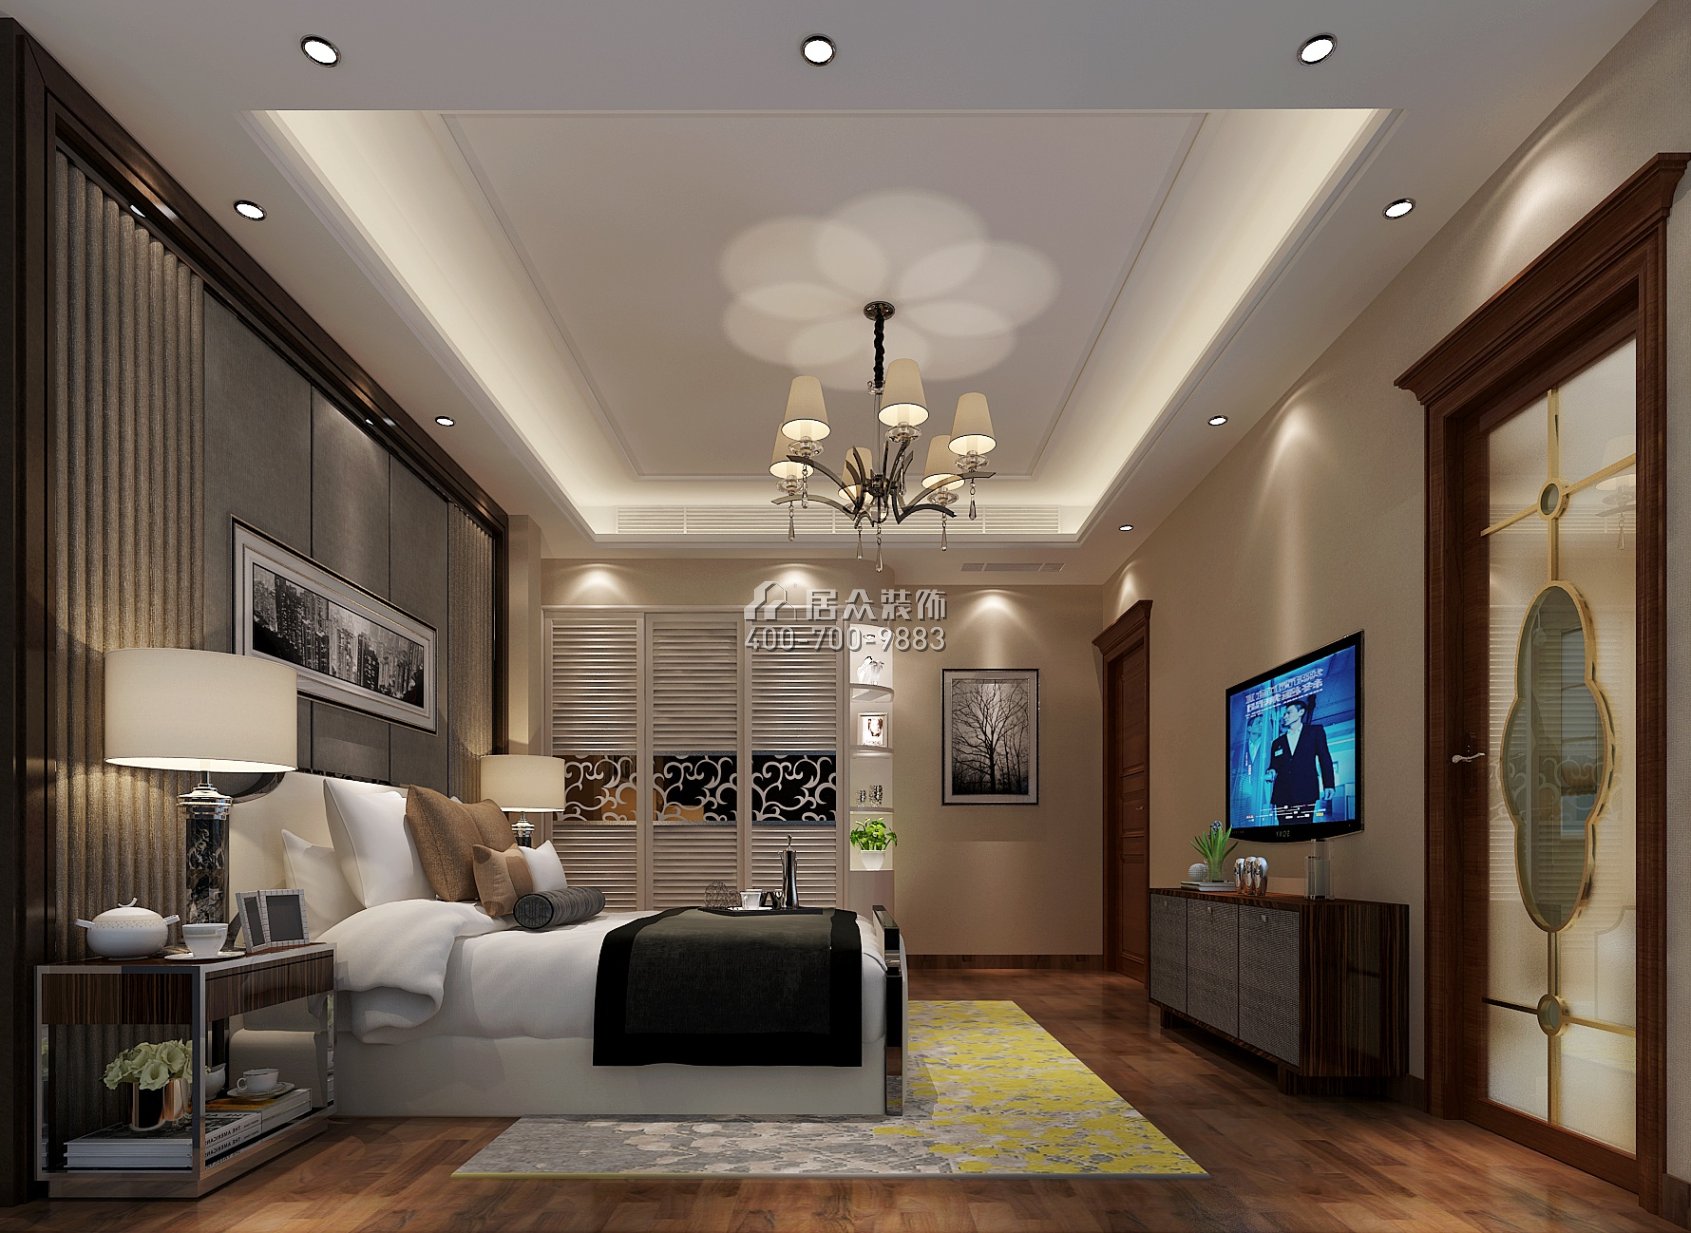 雅宝新城450平方米中式风格别墅户型卧室装修效果图